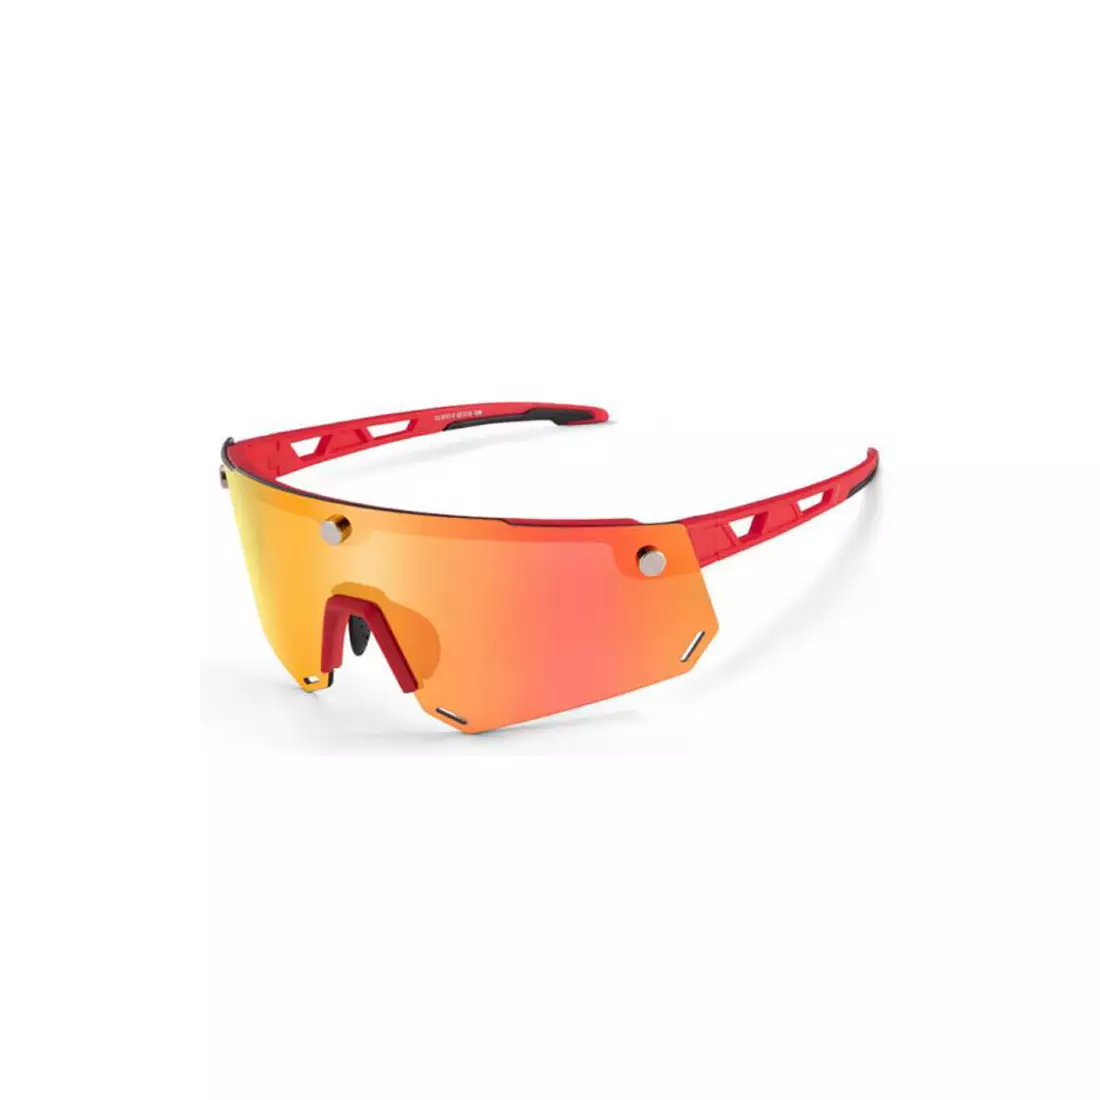 Rockbros SP213RB Fahrrad / Sportbrille mit polarisiertem rot